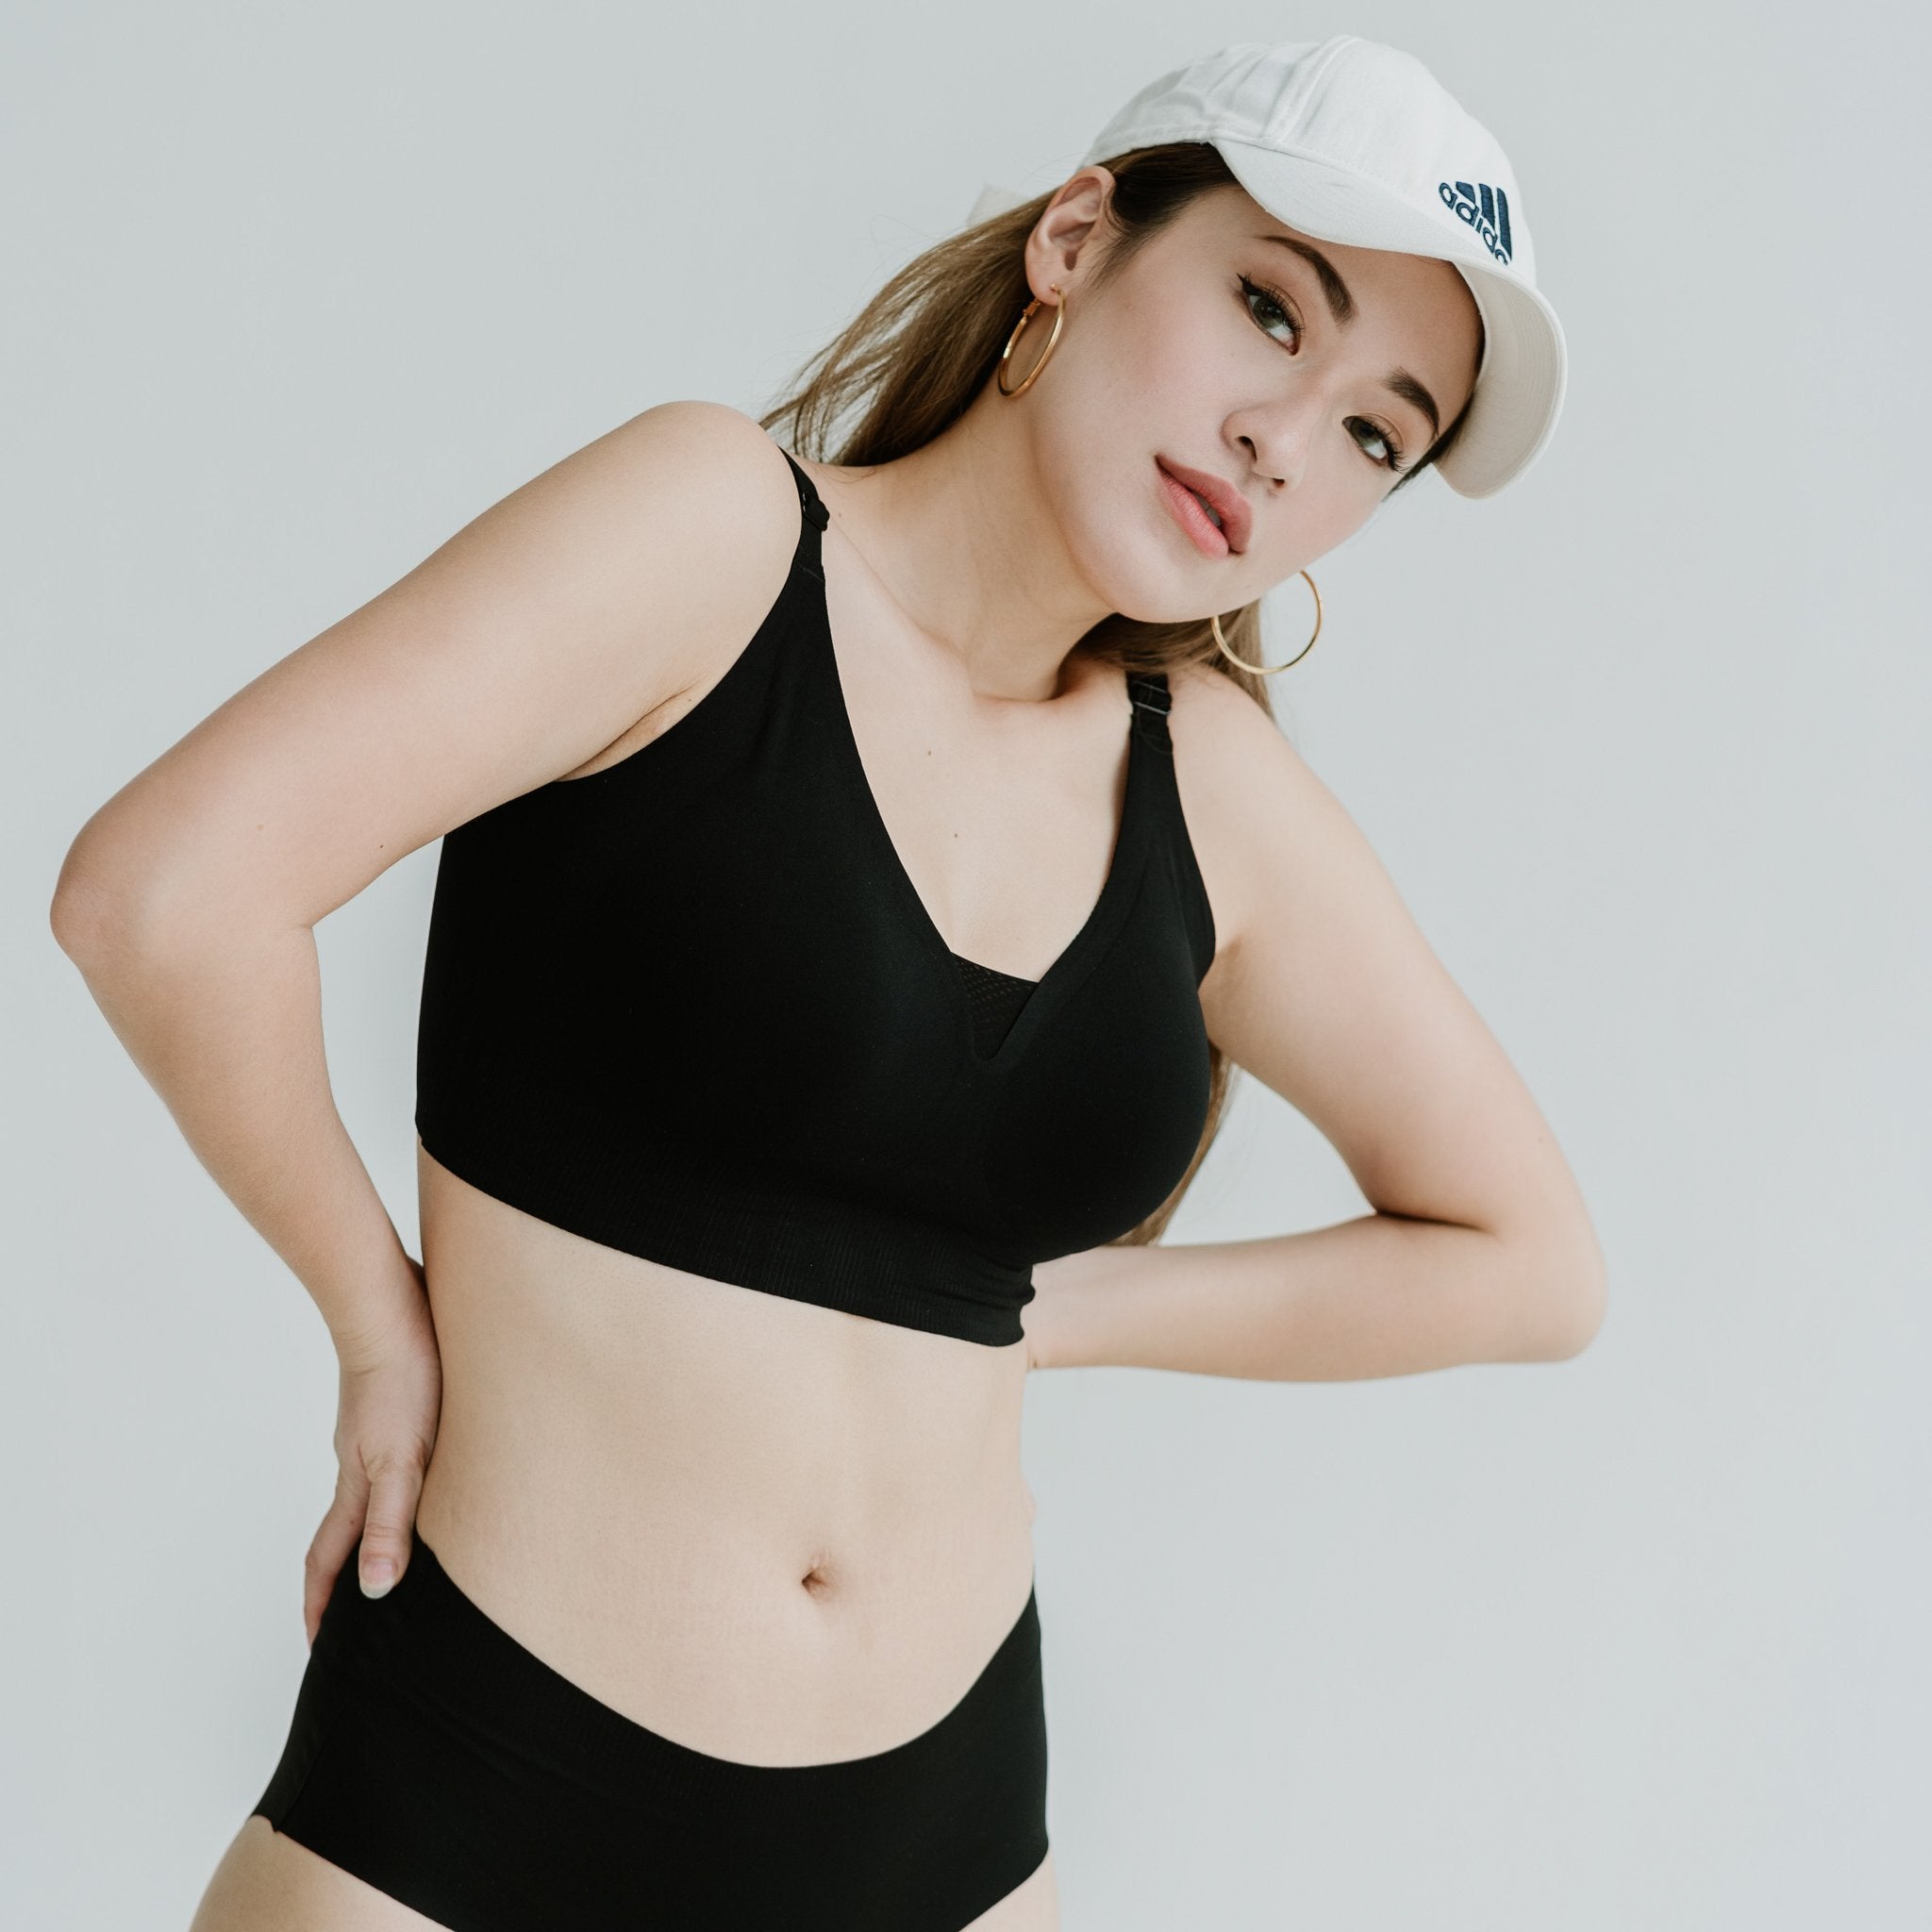 JunoActive Announces New Line of Plus-Size Sports Bras